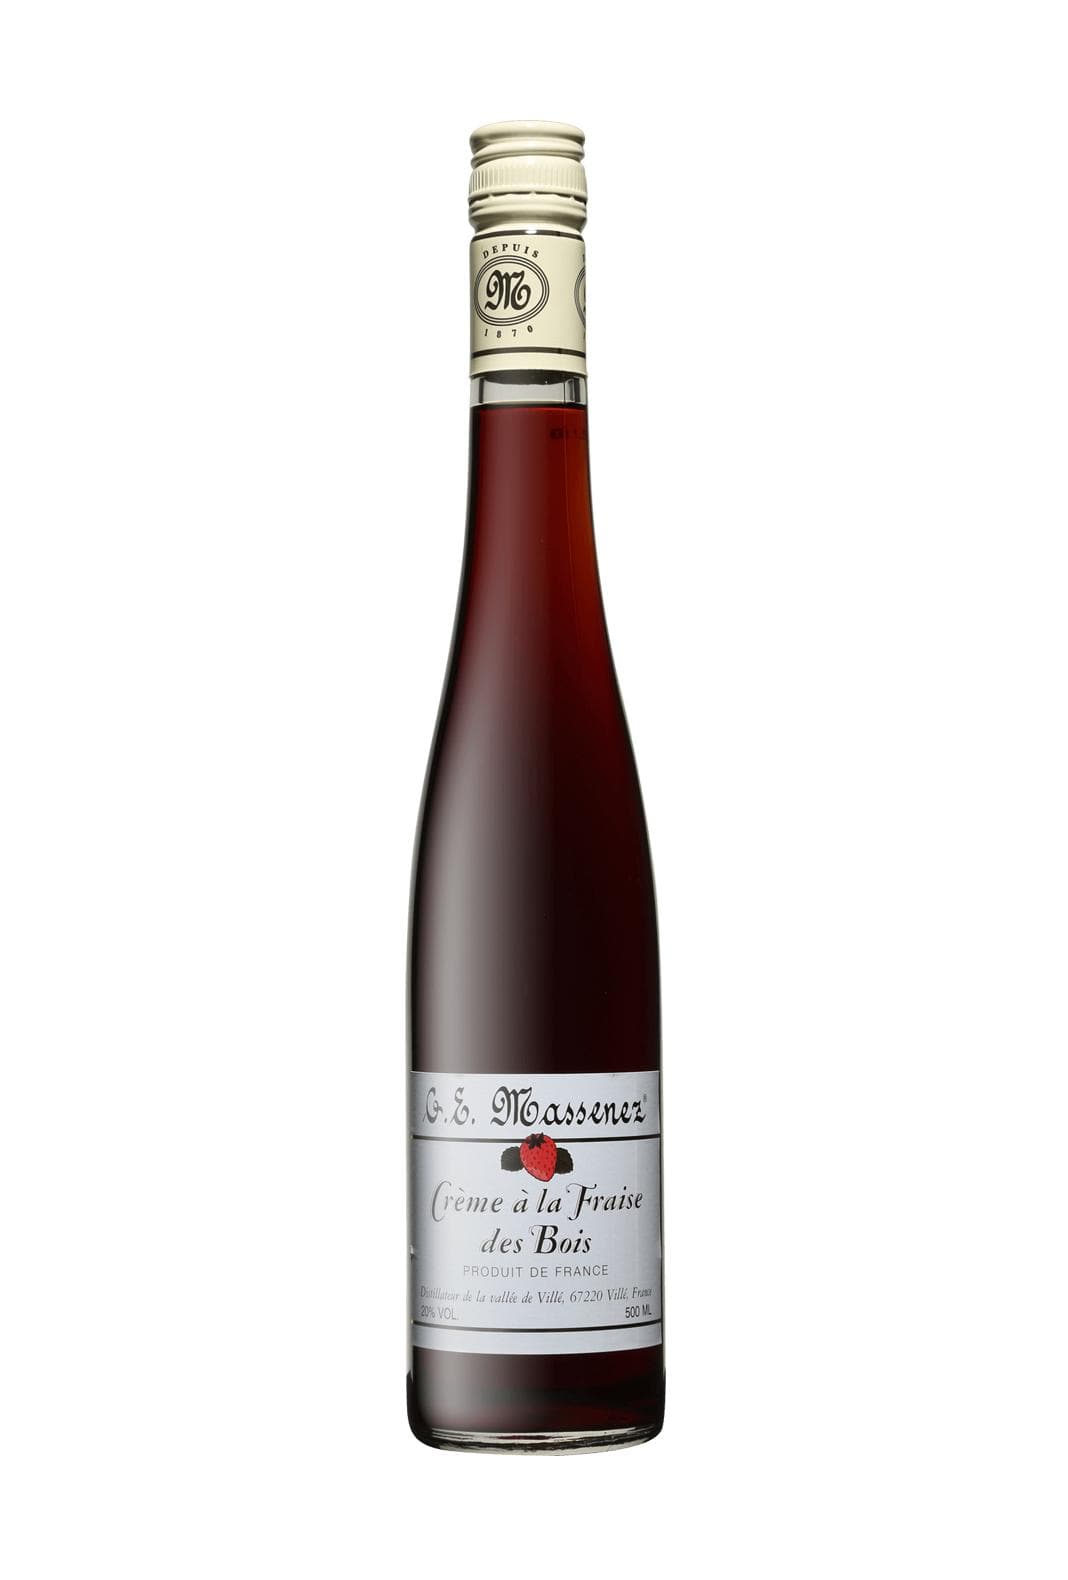 Massenez Liqueur Creme de Fraise des Bois (Wild Strawberry) 20% 500ml | Liqueurs | Shop online at Spirits of France